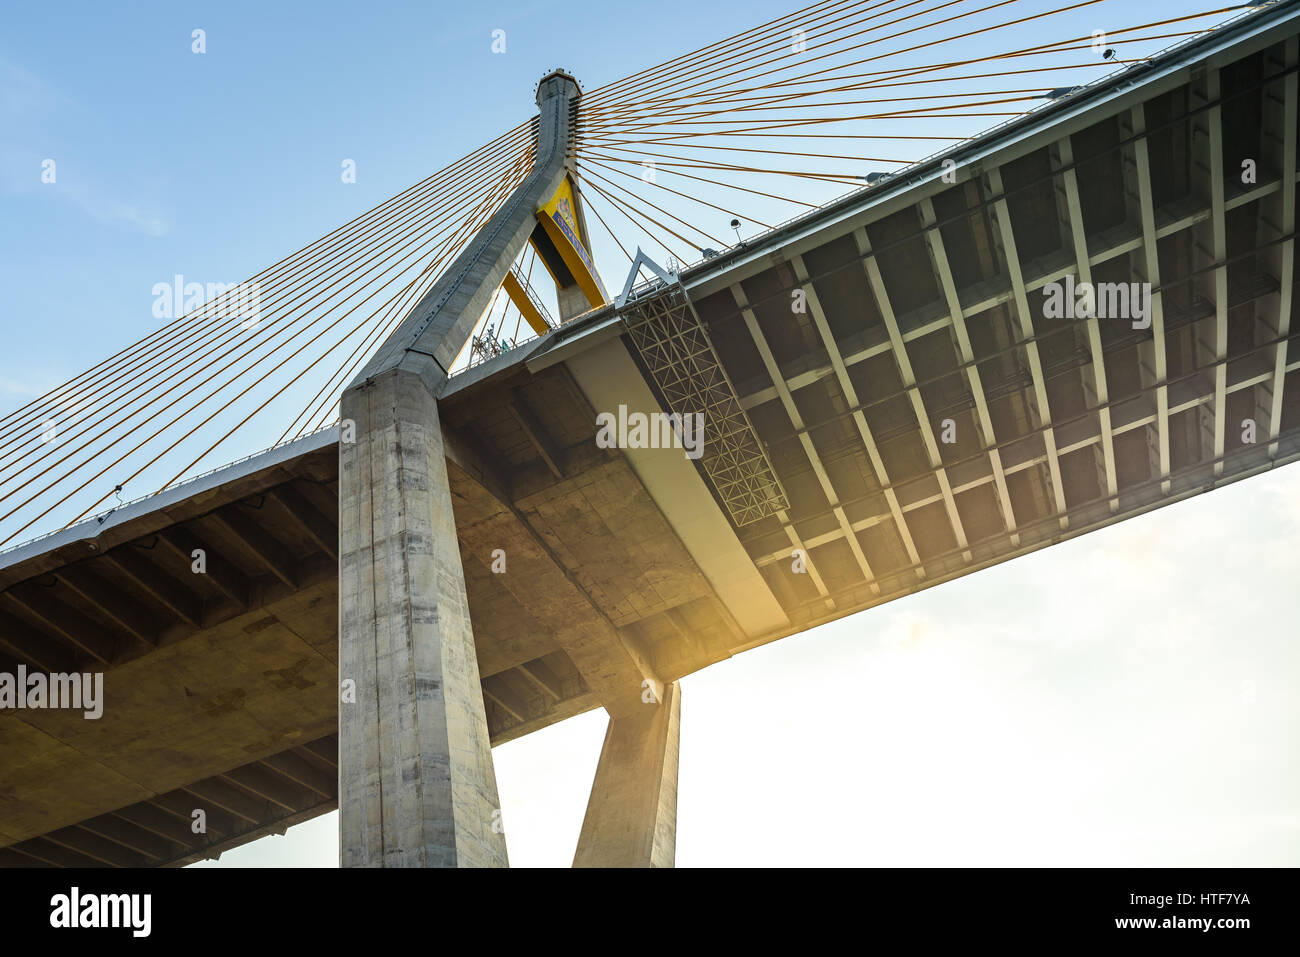 Große Brücke nennen Bhumibol Brücke in Bangkok, Thailand, der Chao Phraya River überqueren. Haben Sie unter dieser Brücke einen Park mit schönen Sightseeing statt. Stockfoto